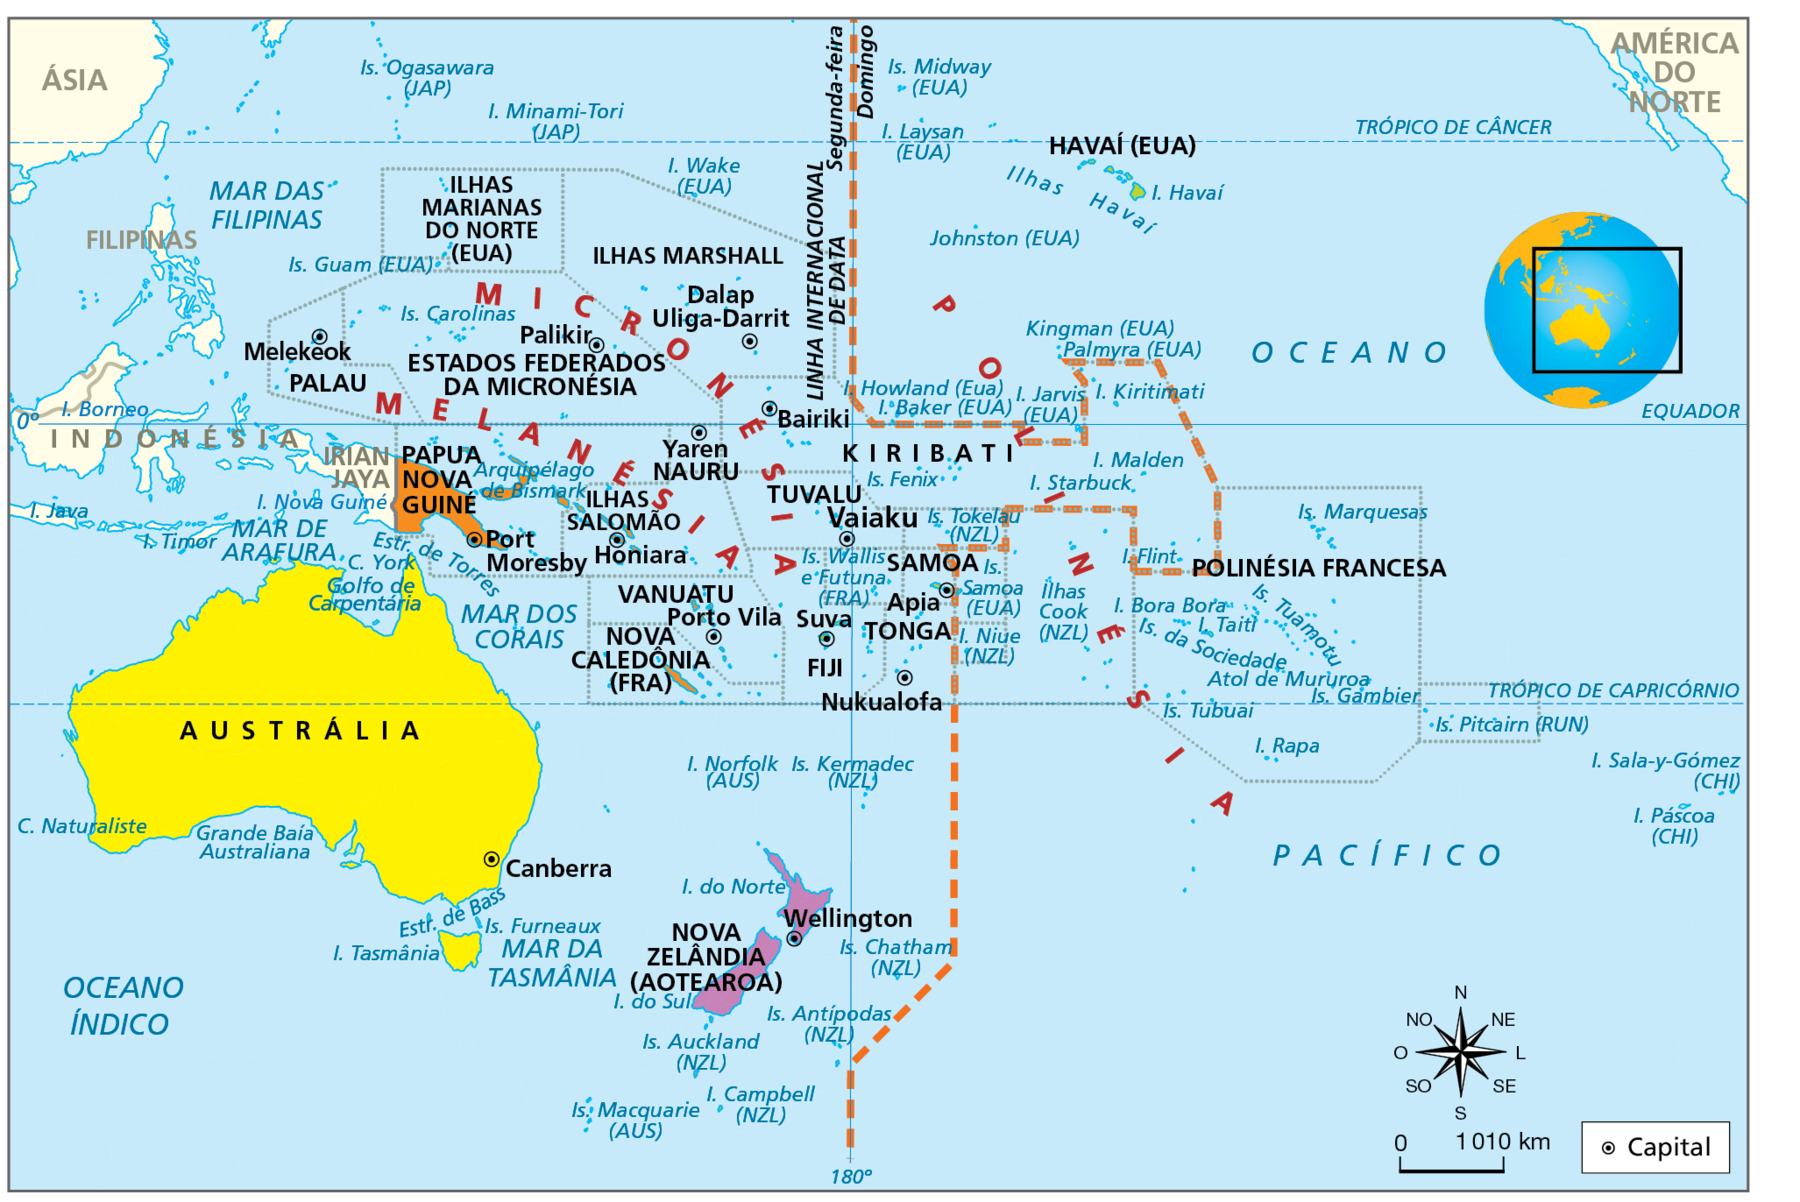 Mapa. Oceania: grupos de ilhas e divisão política, 2022. Mapa do território da Oceania com seus países, capitais e ilhas evidenciados. 
Austrália (capital: Canberra); Nova Zelândia (capital: Wellington).
Micronésia: Palau (capital: Melekeok); Nauru (capital: Yaren); Kiribati (capital: Bairiki);  Ilhas Marshall (capital: Dalap Uliga-Darrit); Estados Federados da Micronésia (capital: Palikir); Ilhas Marianas do Norte (Estados Unidos), entre outras ilhas.
Melanésia: Papua Nova Guiné (capital: Port Moresby); Ilhas Salomão (capital: Honiara); Vanuatu (capital: Porto Vila); 
Fiji (capital: Suva); Havaí (Estados Unidos), Nova Caledônia (França), entre outras ilhas.
Polinésia: Samoa (capital: Apia); Tuvalu (capital: Vaiaku);  Tonga (capital: Nukualofa); Polinésia Francesa: Ilhas Cook (Nova Zelândia); Ilha Bora Bora; Ilha Taiti; Ilhas da Sociedade;  Ilhas Marquesas; Ilhas Pitcairn (Reino Unido); Ilha de Páscoa (Chile); Ilhas Midway (Estados Unidos).
Ao centro, linha tracejada vermelha na latitude 180 graus, indicando a linha internacional de data: à esquerdo é segunda-feira e, à direita, domingo. 
Abaixo, rosa dos ventos e escala de 0 a 1.010 quilômetros.